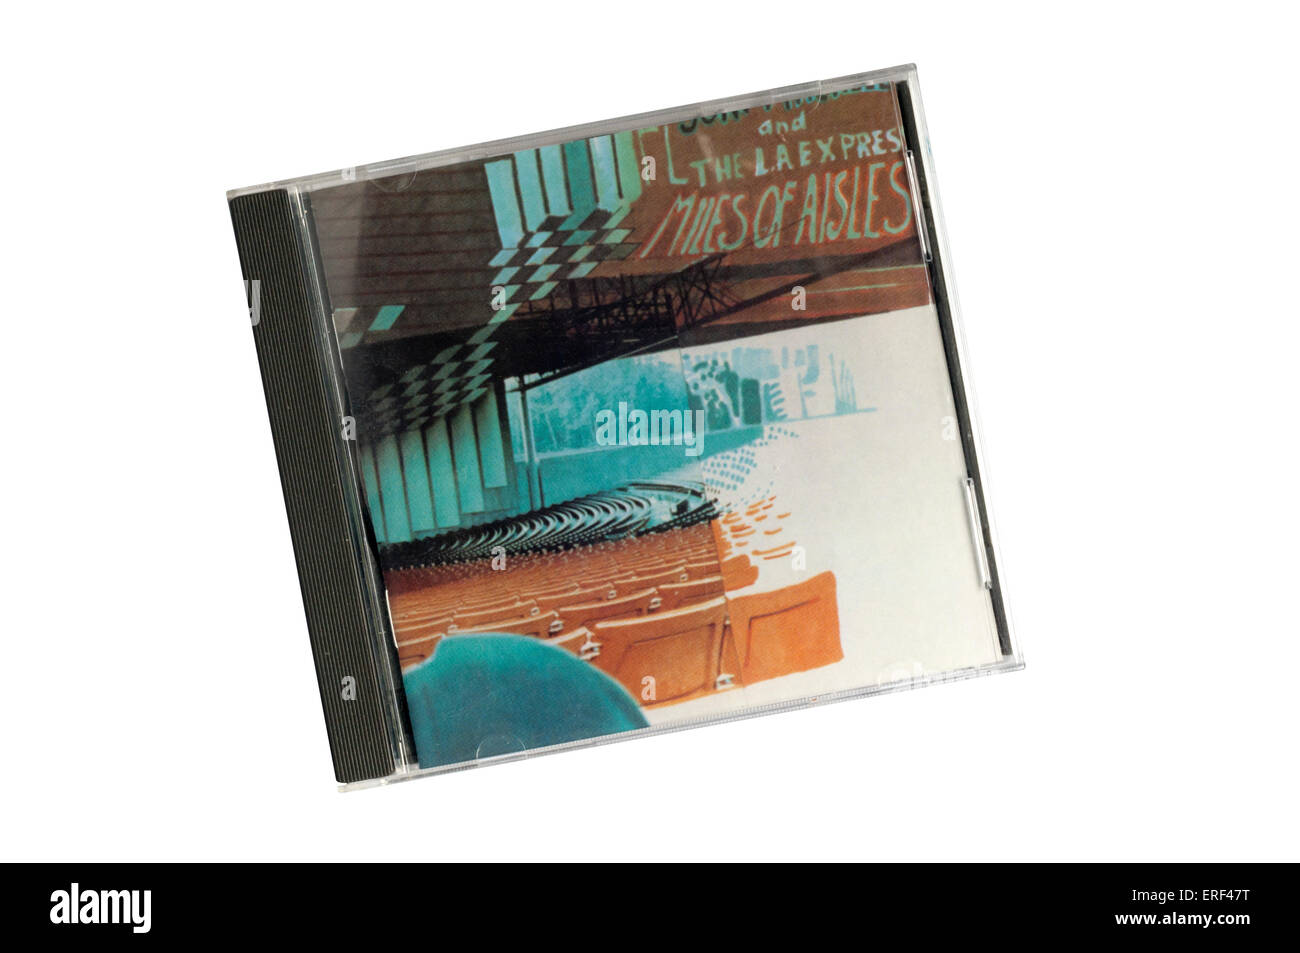 Miglia di navate era un 1974 live album doppio dal canadese cantautrice Joni Mitchell con il backing band L. A. Express. Foto Stock